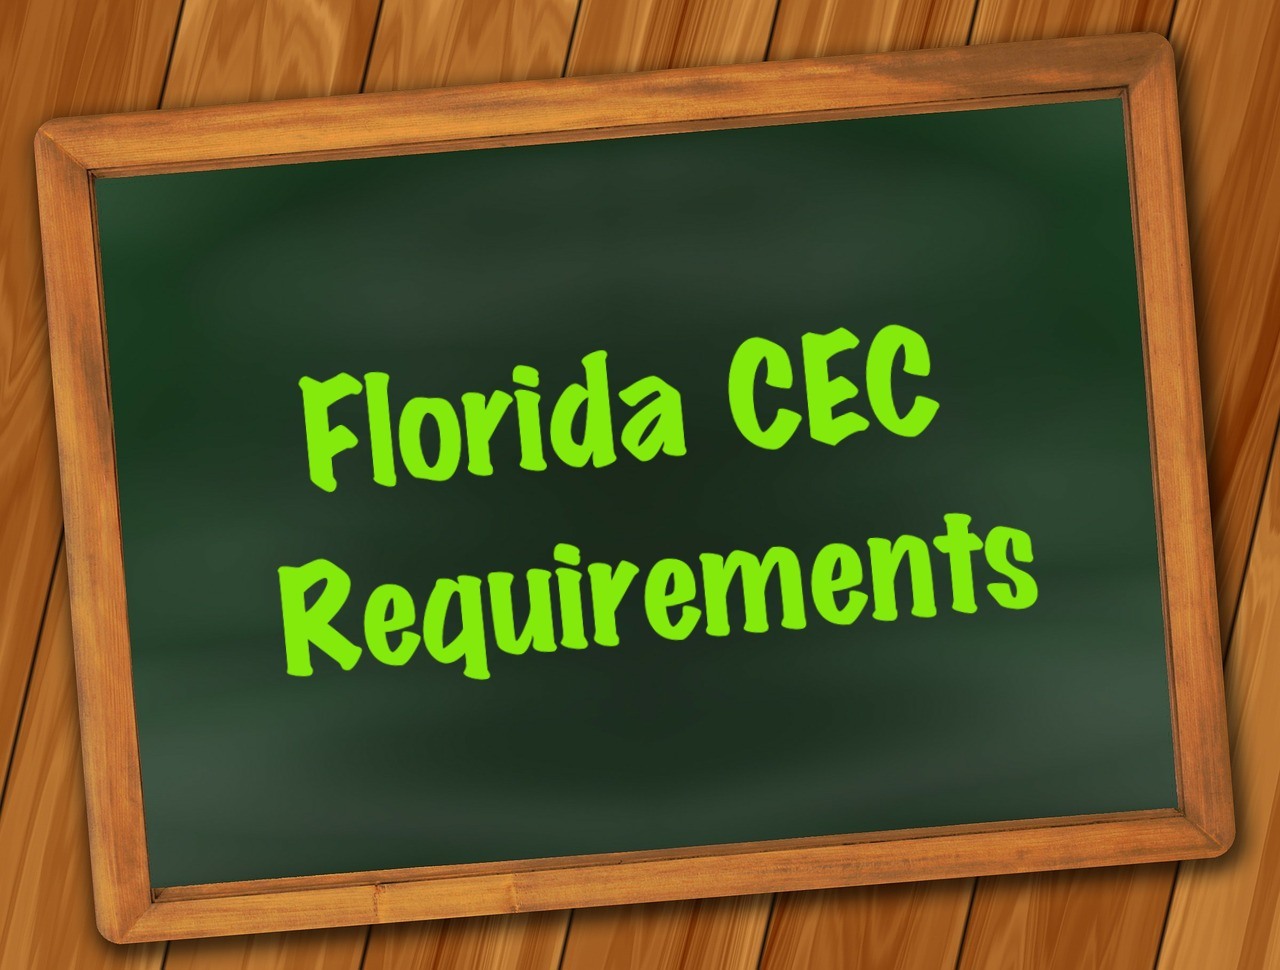 Florida CEC Requirements